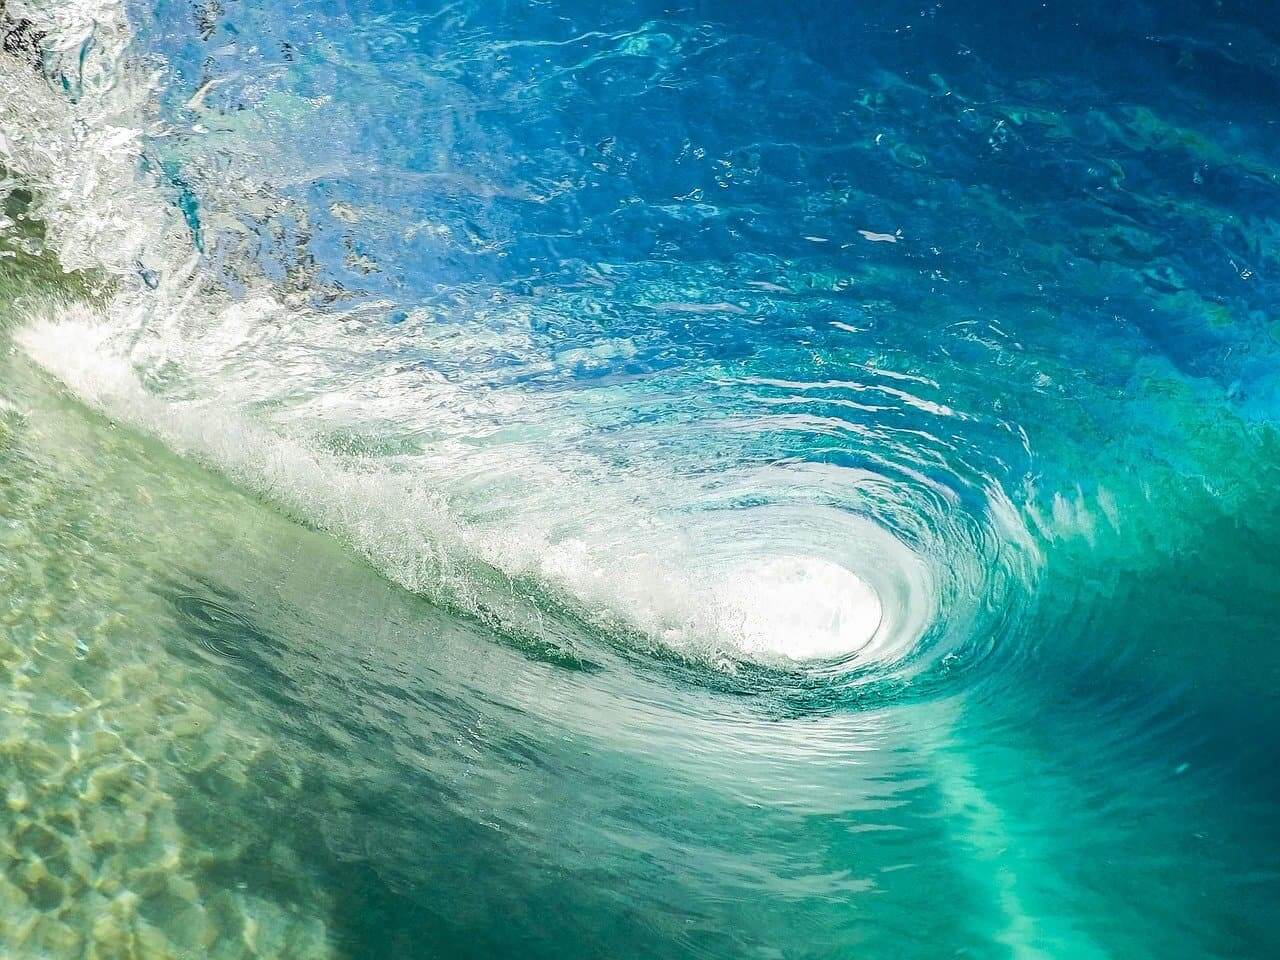 Barrel of a wave